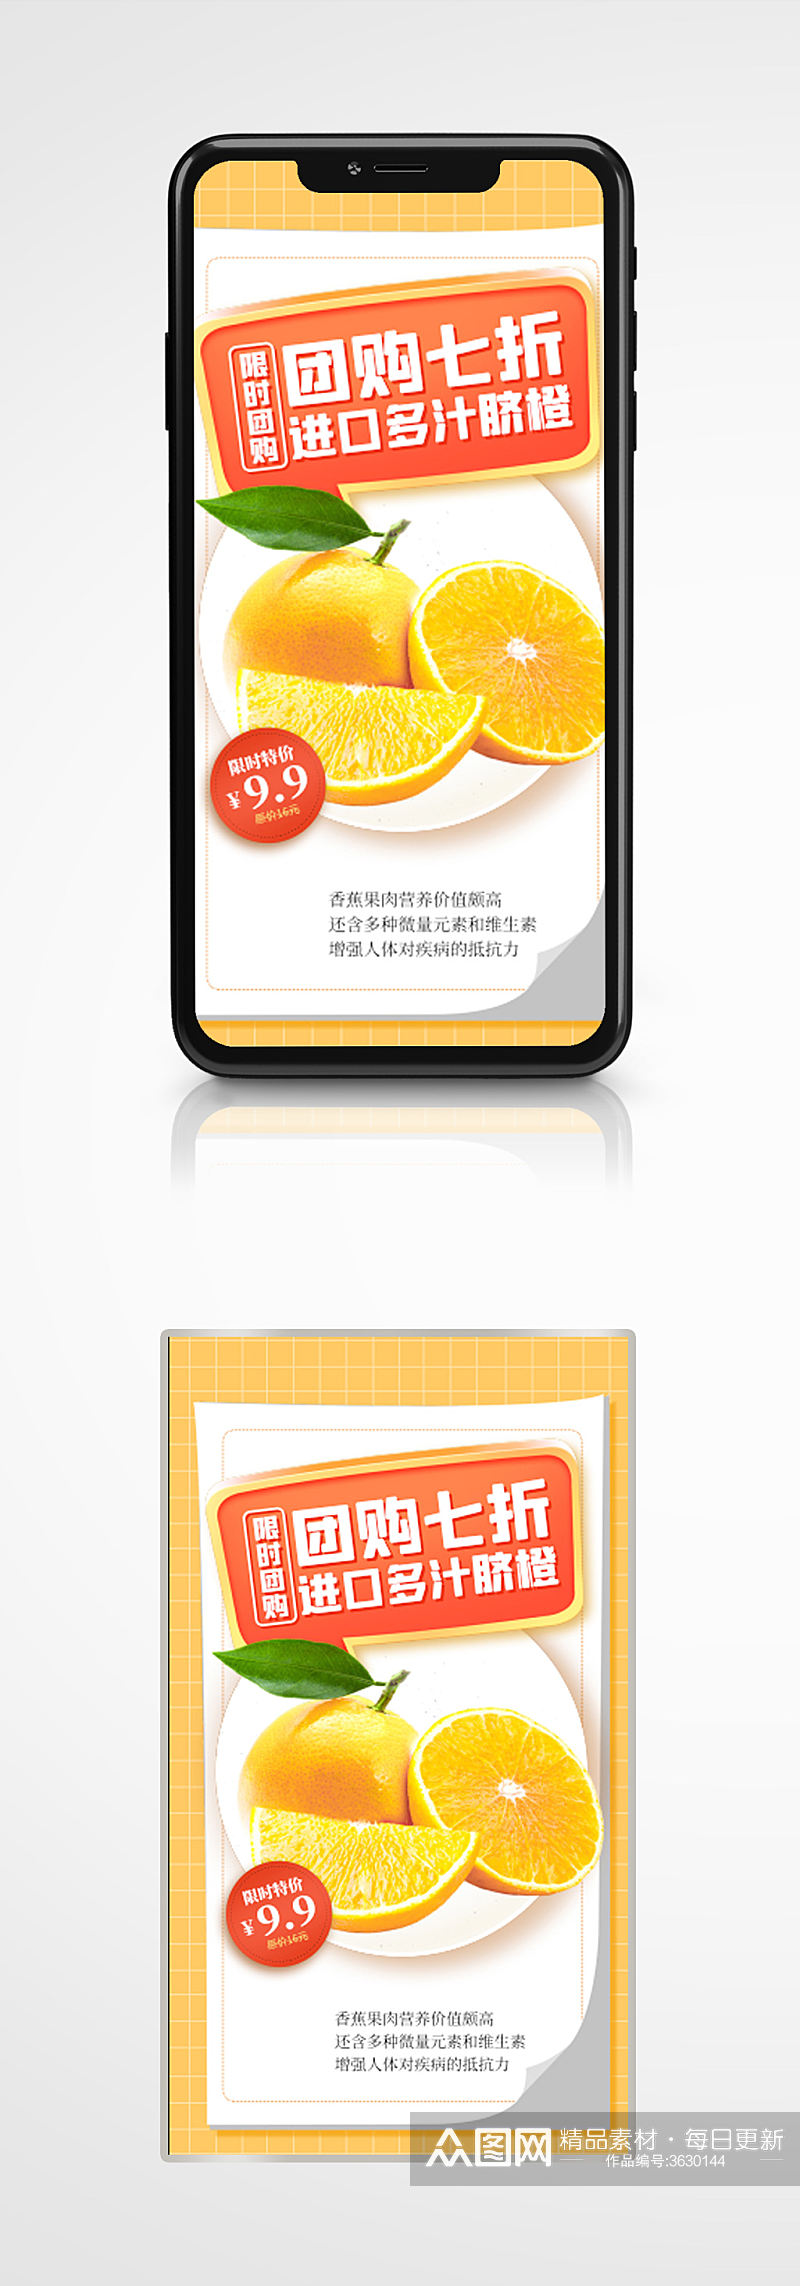 水果橙子团购优惠手机海报鲜果上市素材